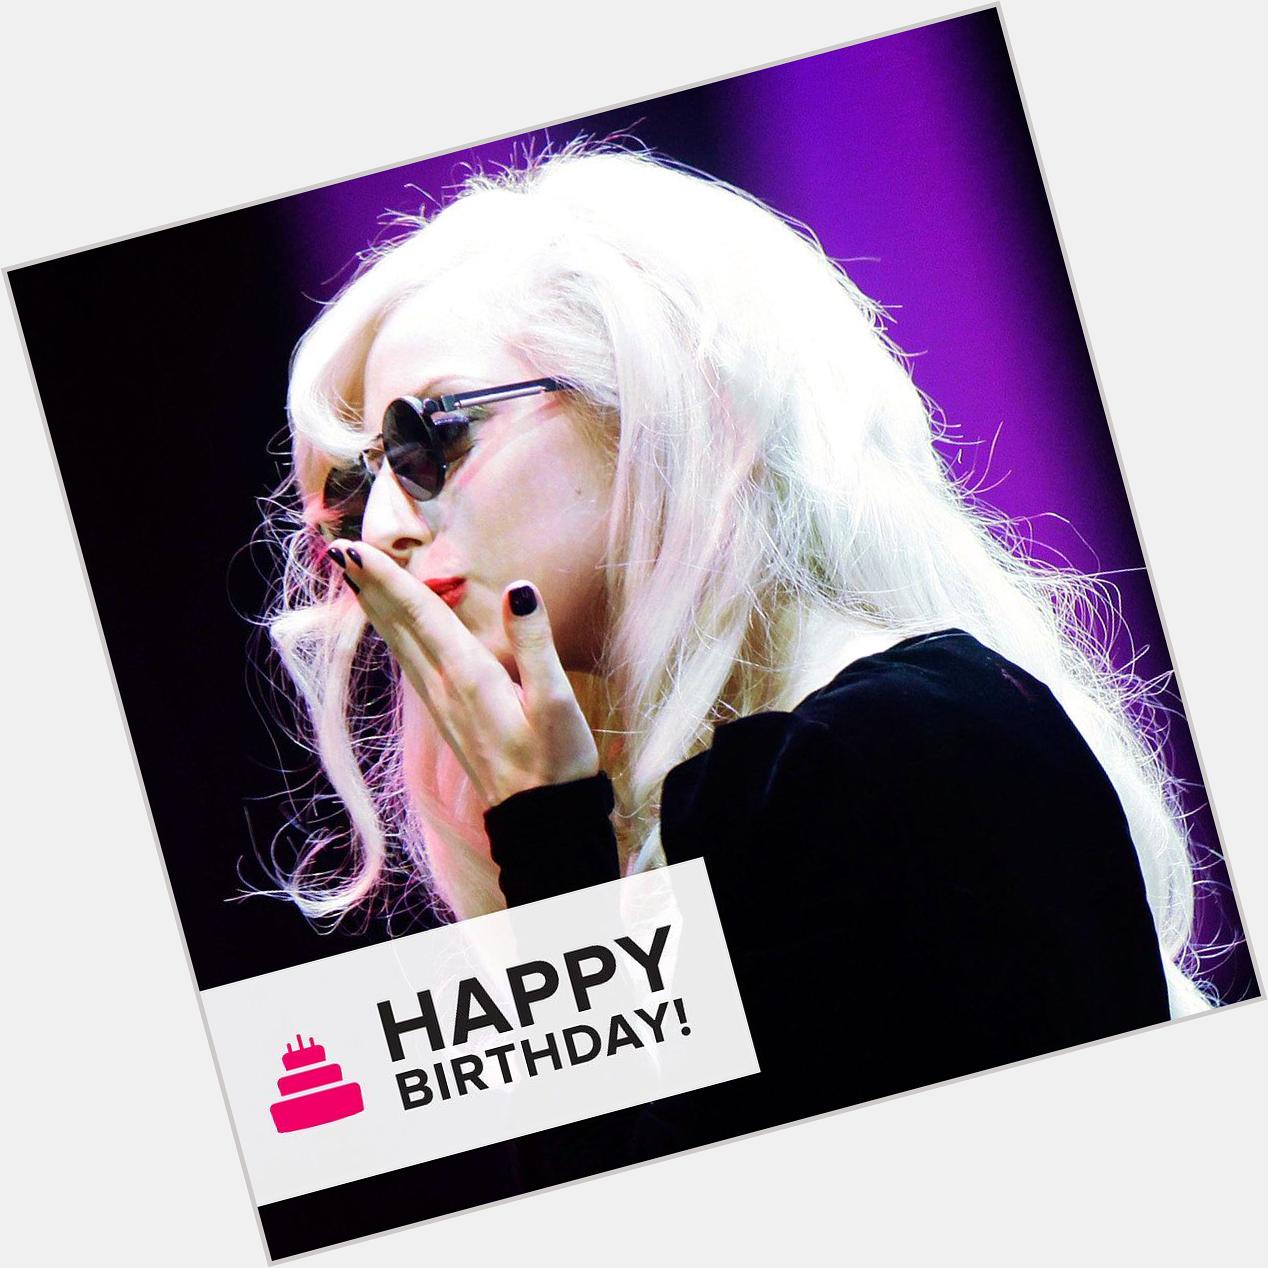 Happy Birthday Month Lady Gaga! March 28.2015 